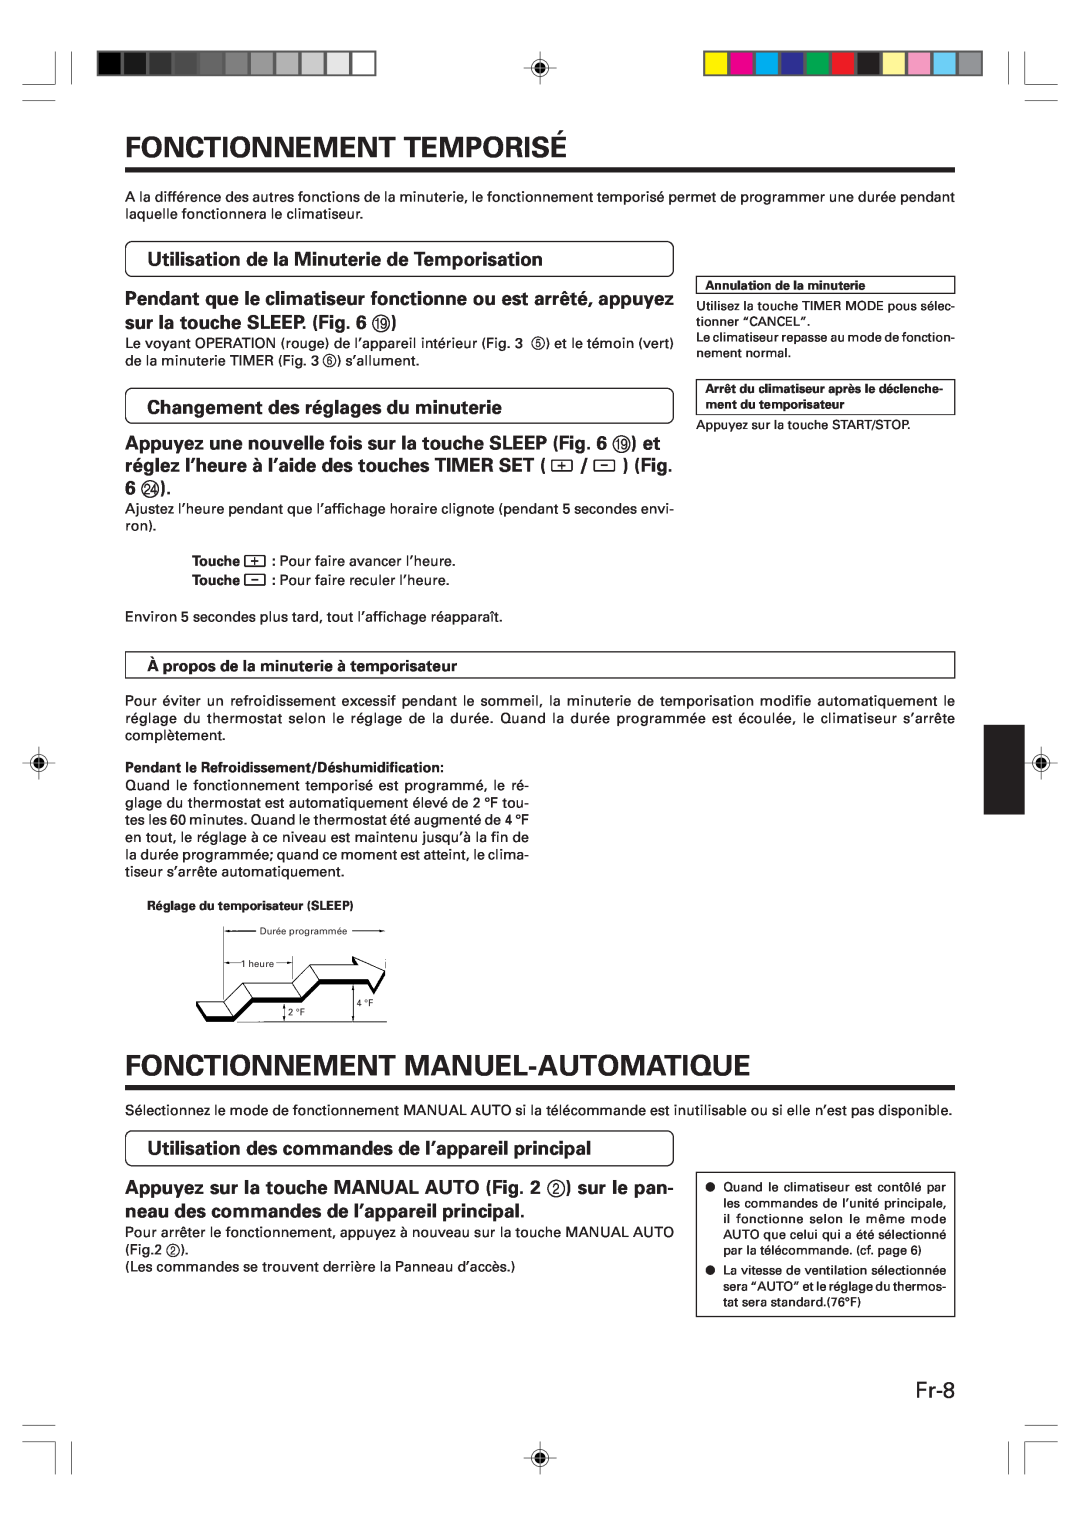 Friedrich MR12Y1F Fonctionnement Temporisé, Fonctionnement Manuel-Automatique, Fr-8, Changement des réglages du minuterie 